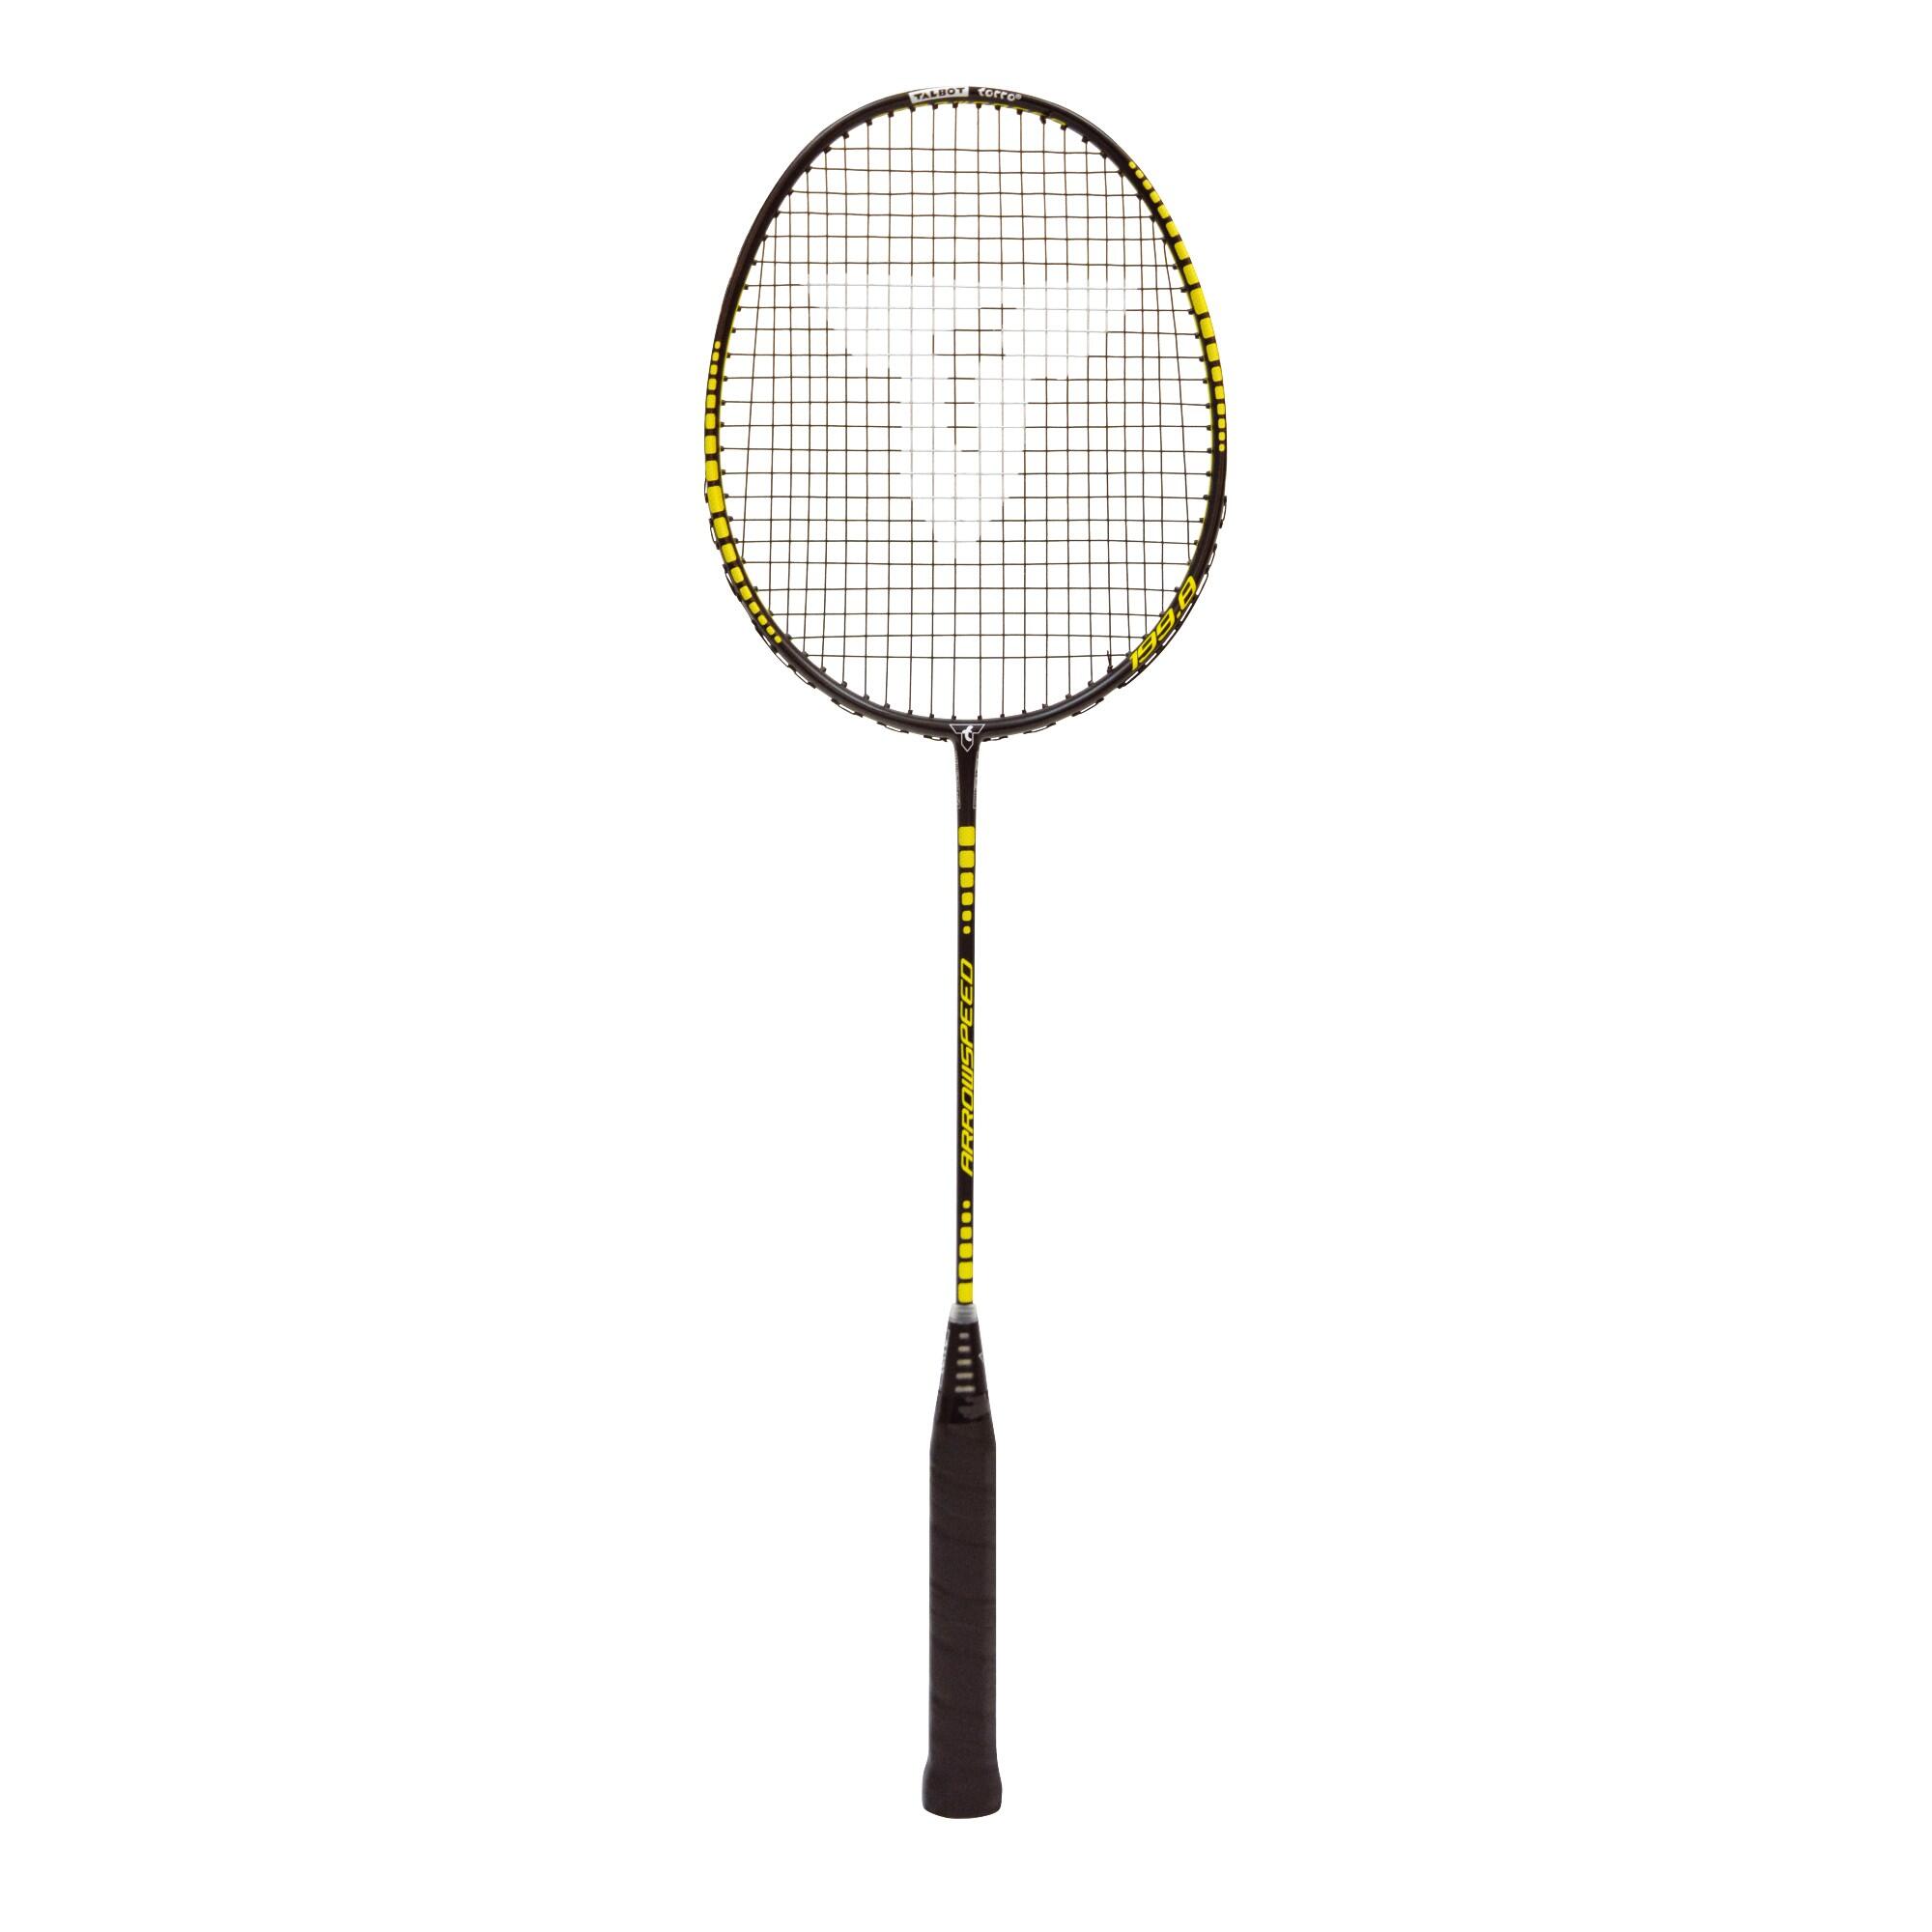 Badmintonschläger Arrowspeed 199 - schwarz/neongelb